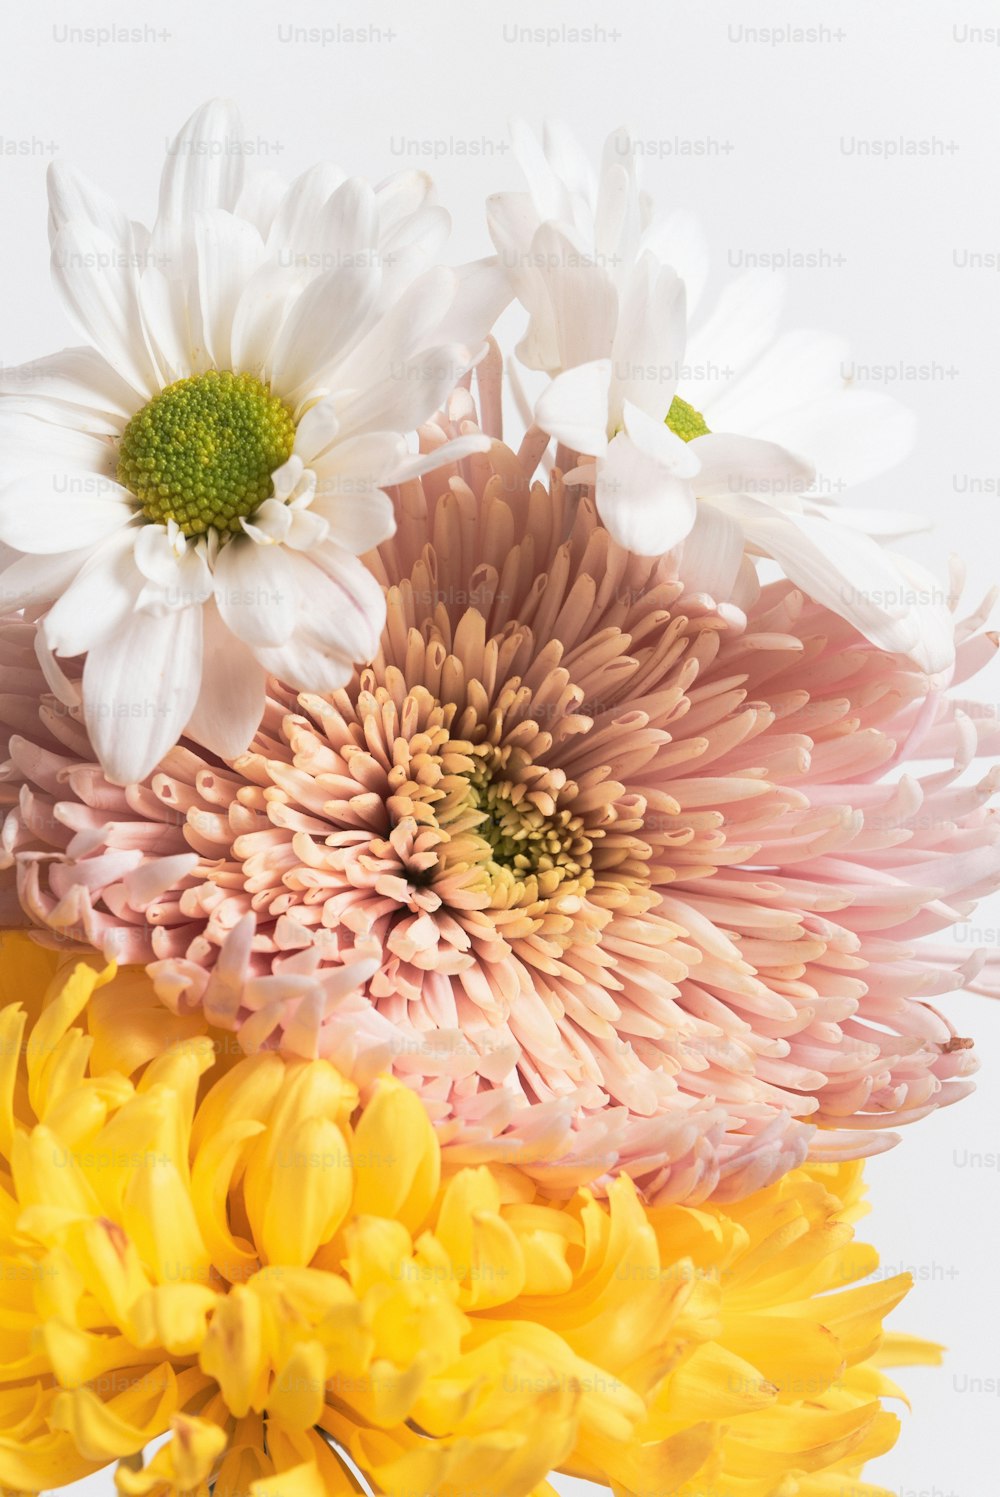 Un primo piano di un mazzo di fiori in un vaso